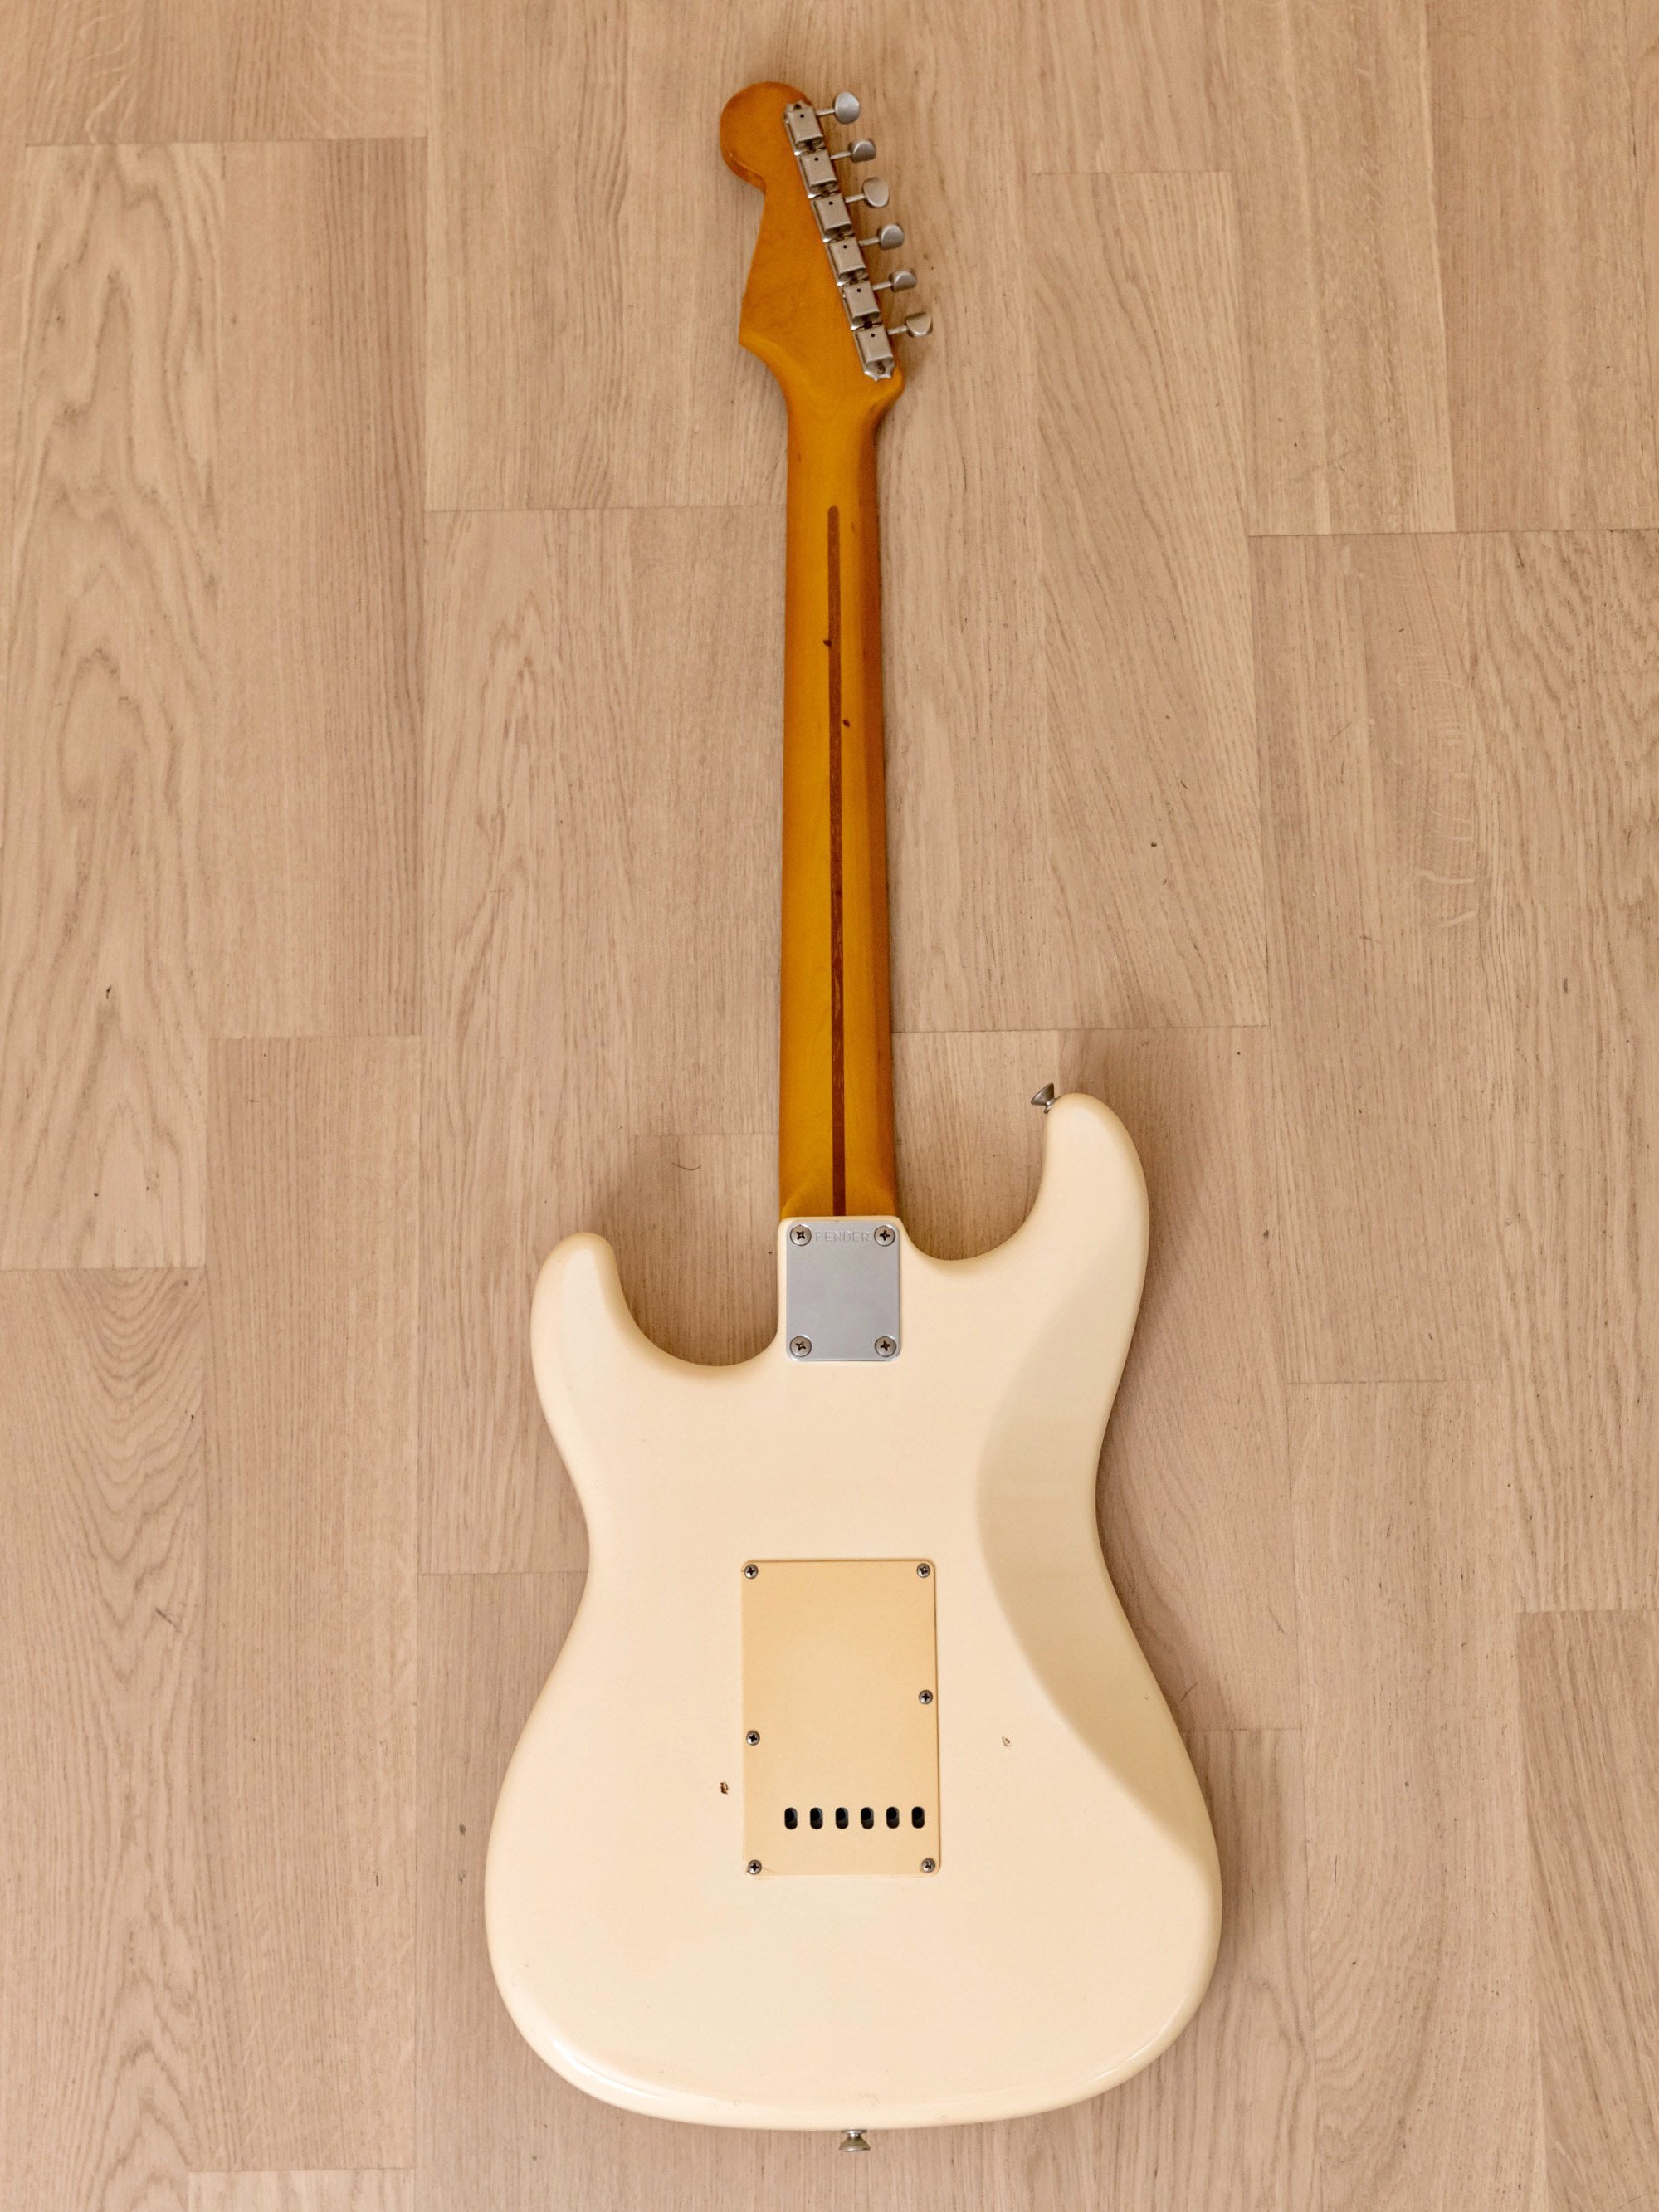 1982-83 Fender '57 Stratocaster JV Olympic White, ST57-65 w/ USA Fullerton  Pickups, Japan MIJ Fujigen